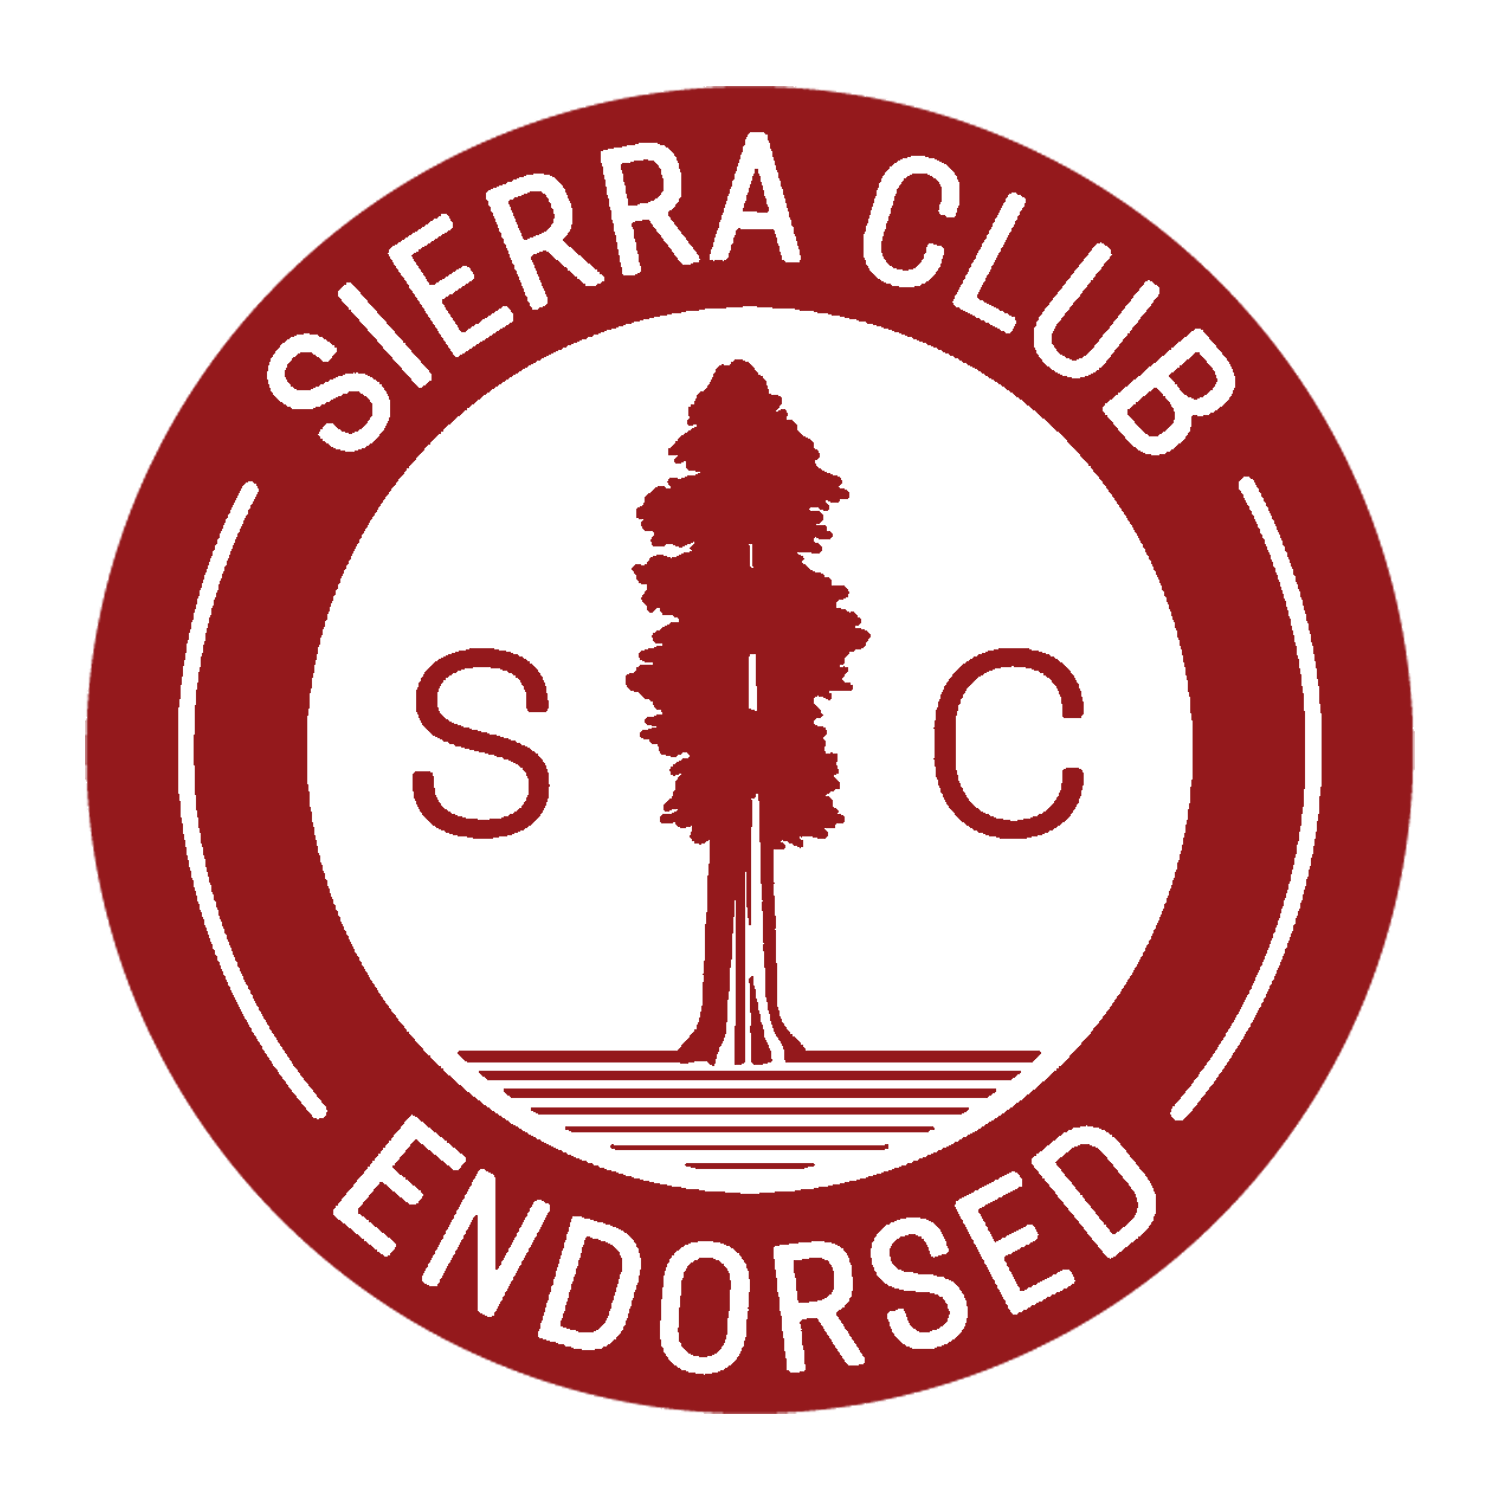 Sierra Club Endorsed Logo